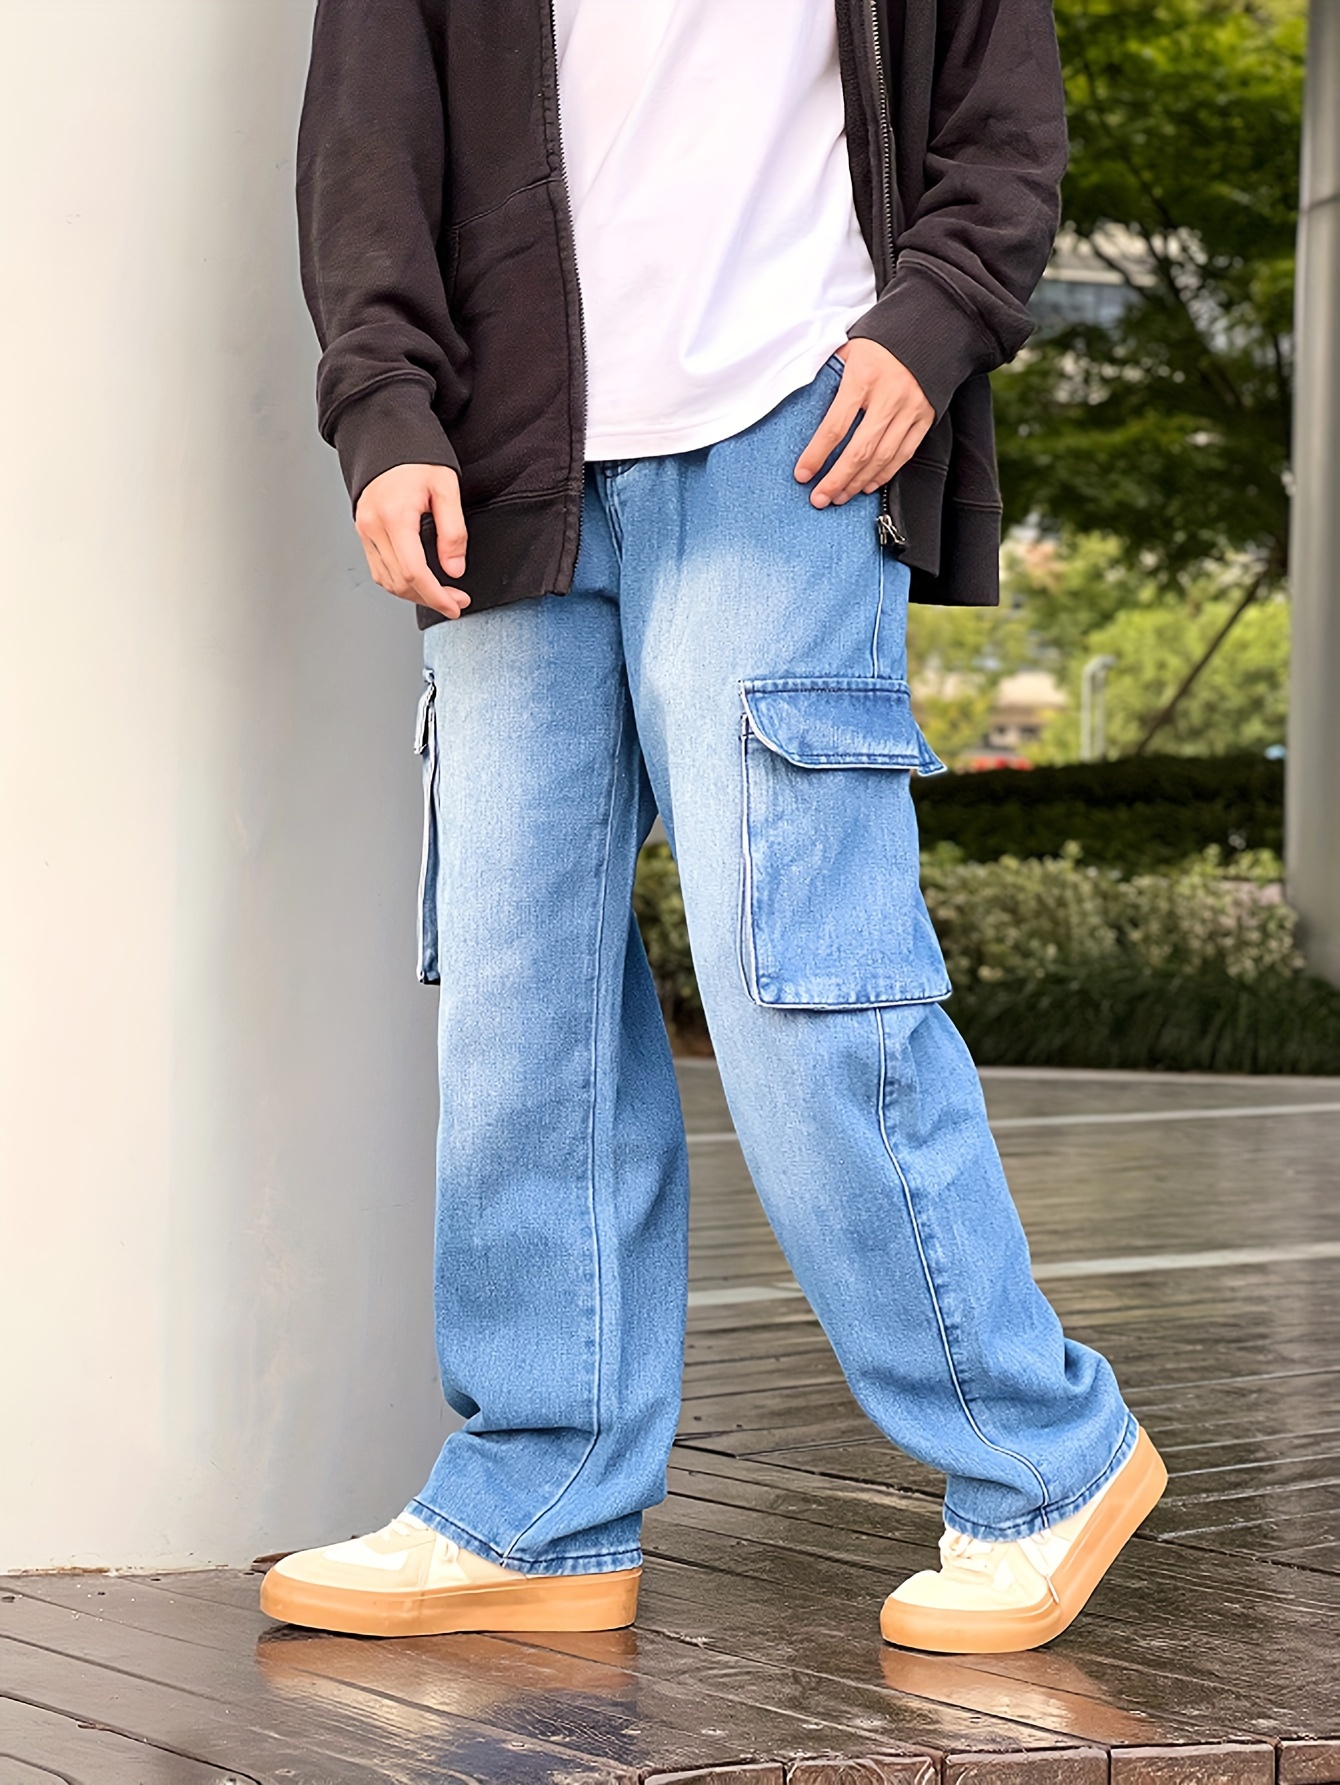 Pantalones de mezclilla/ jeans/ vaqueros pegados/entallados, delgados y  medianamente flexibles. Ropa para hombres.